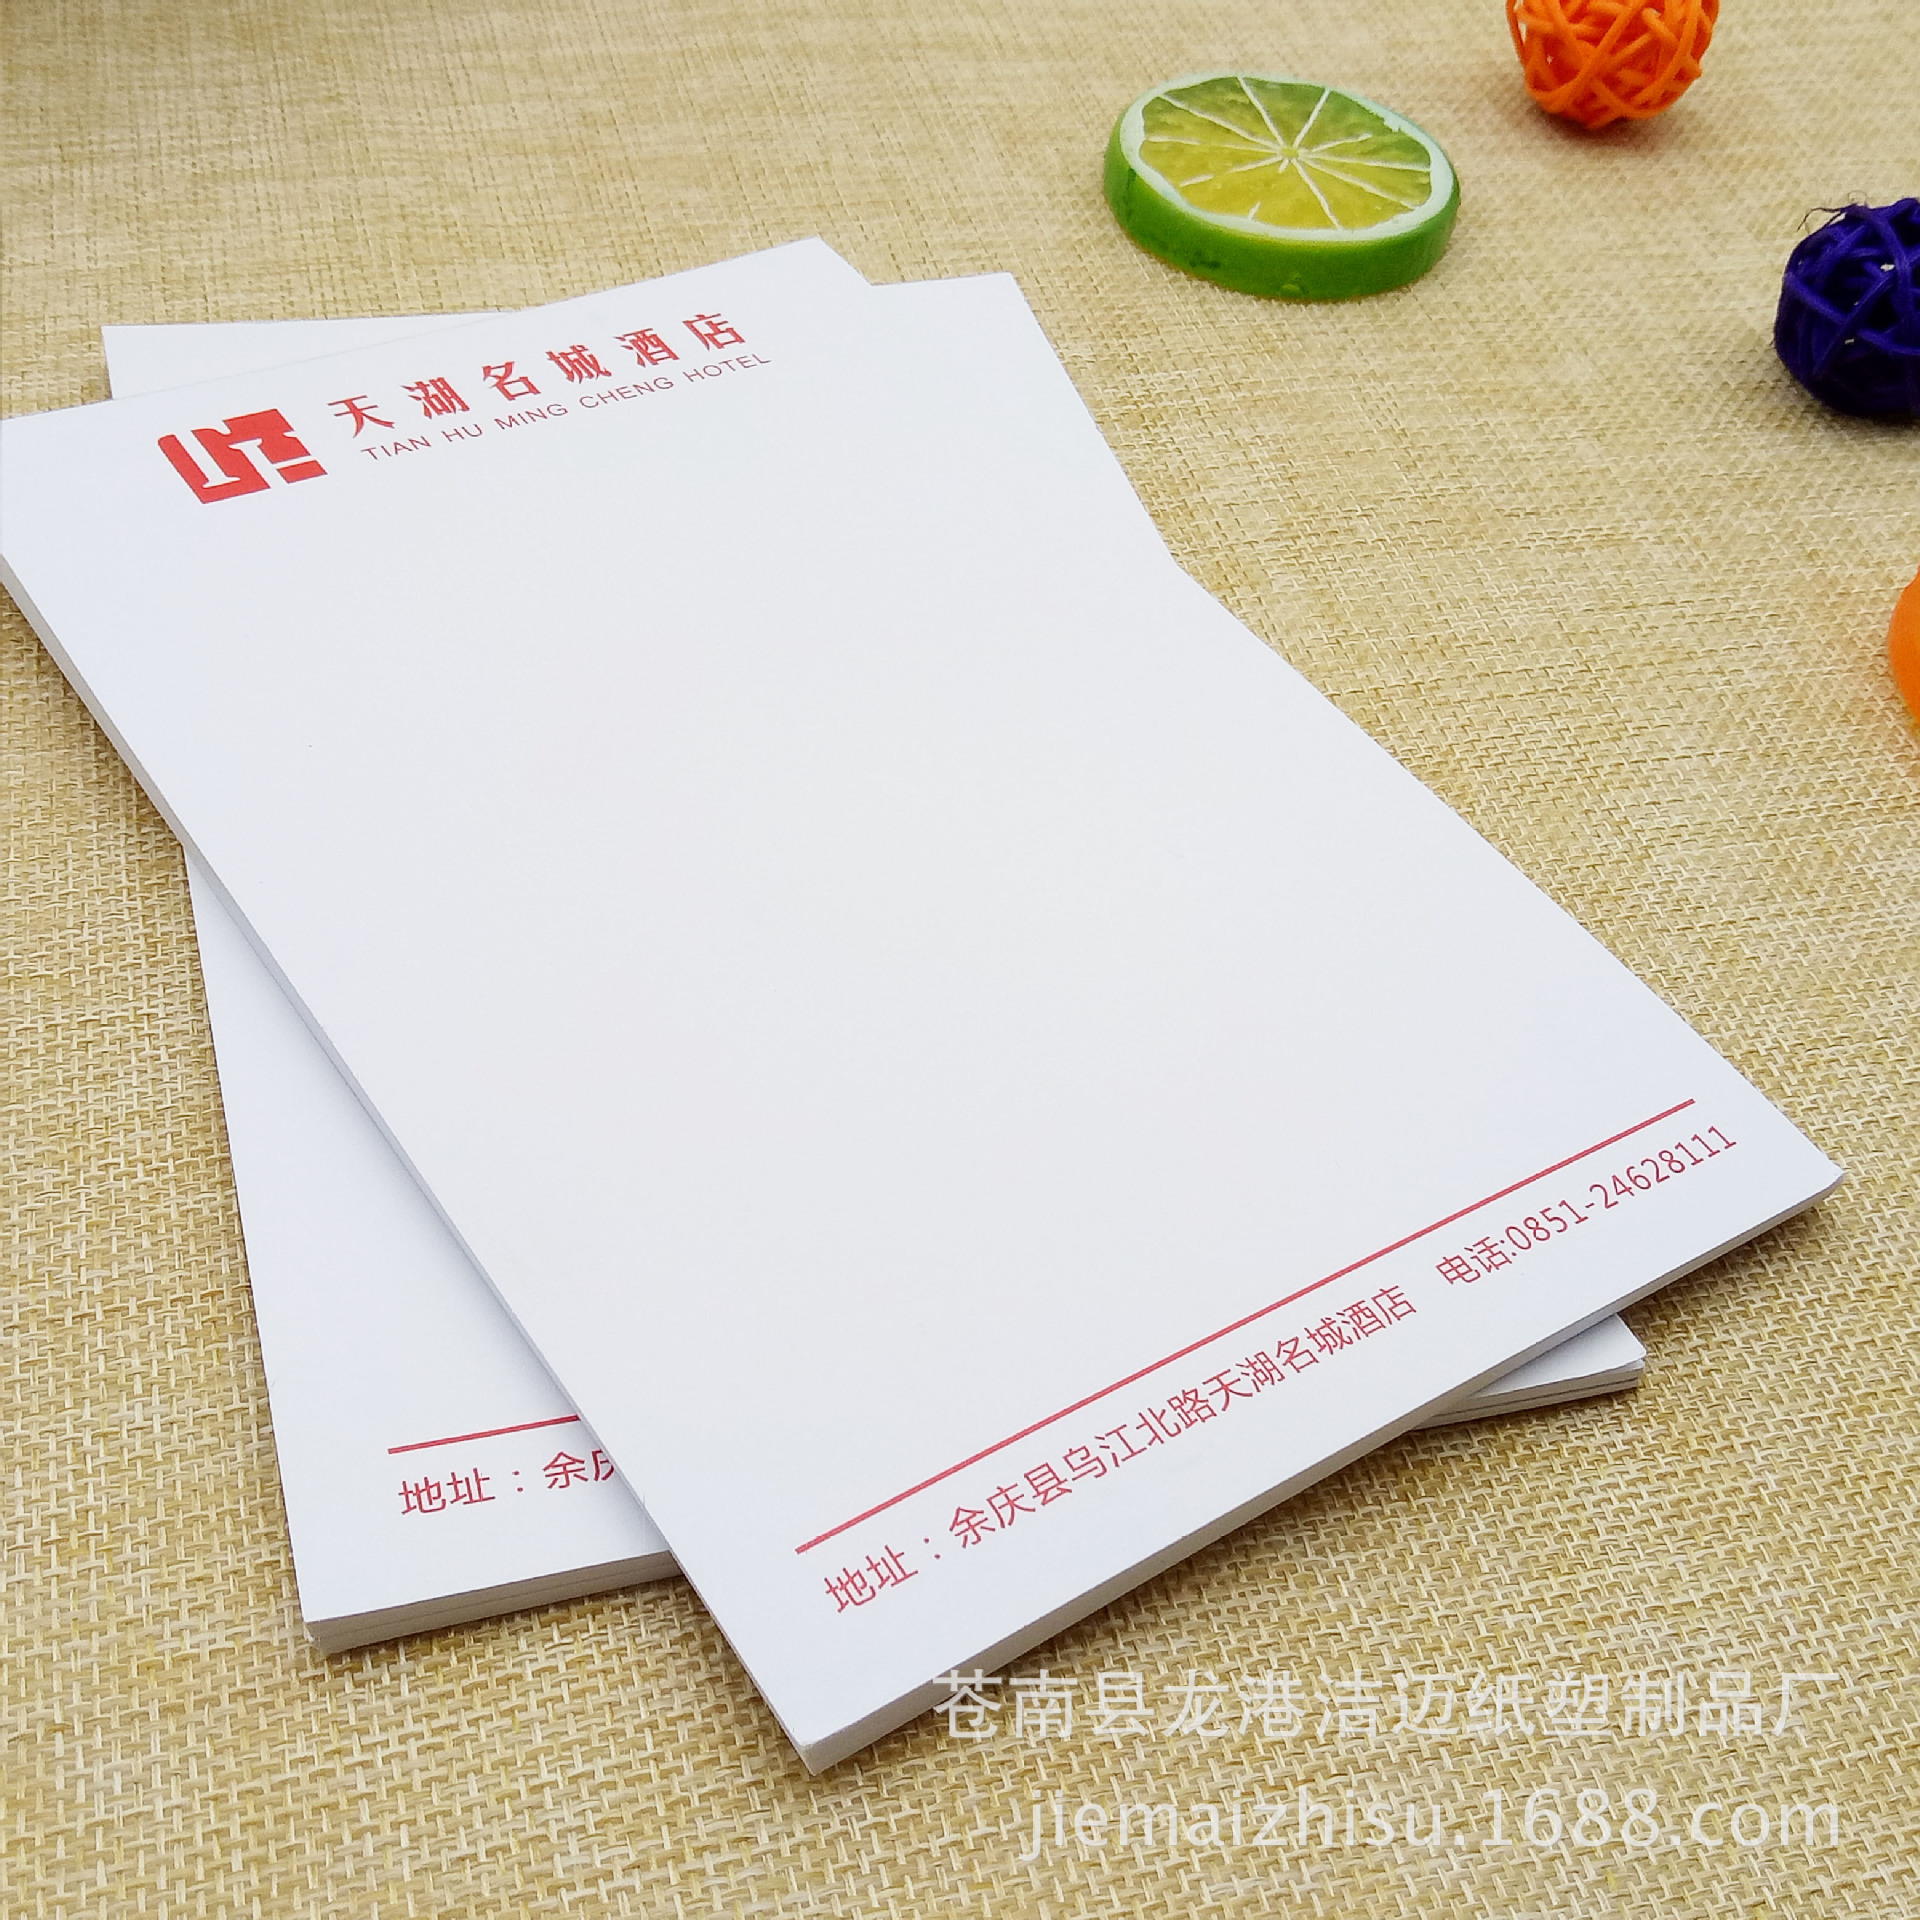 青岛科技大学信纸正规A4打印纸出国留学推荐信用带地址信息文件纸-Taobao